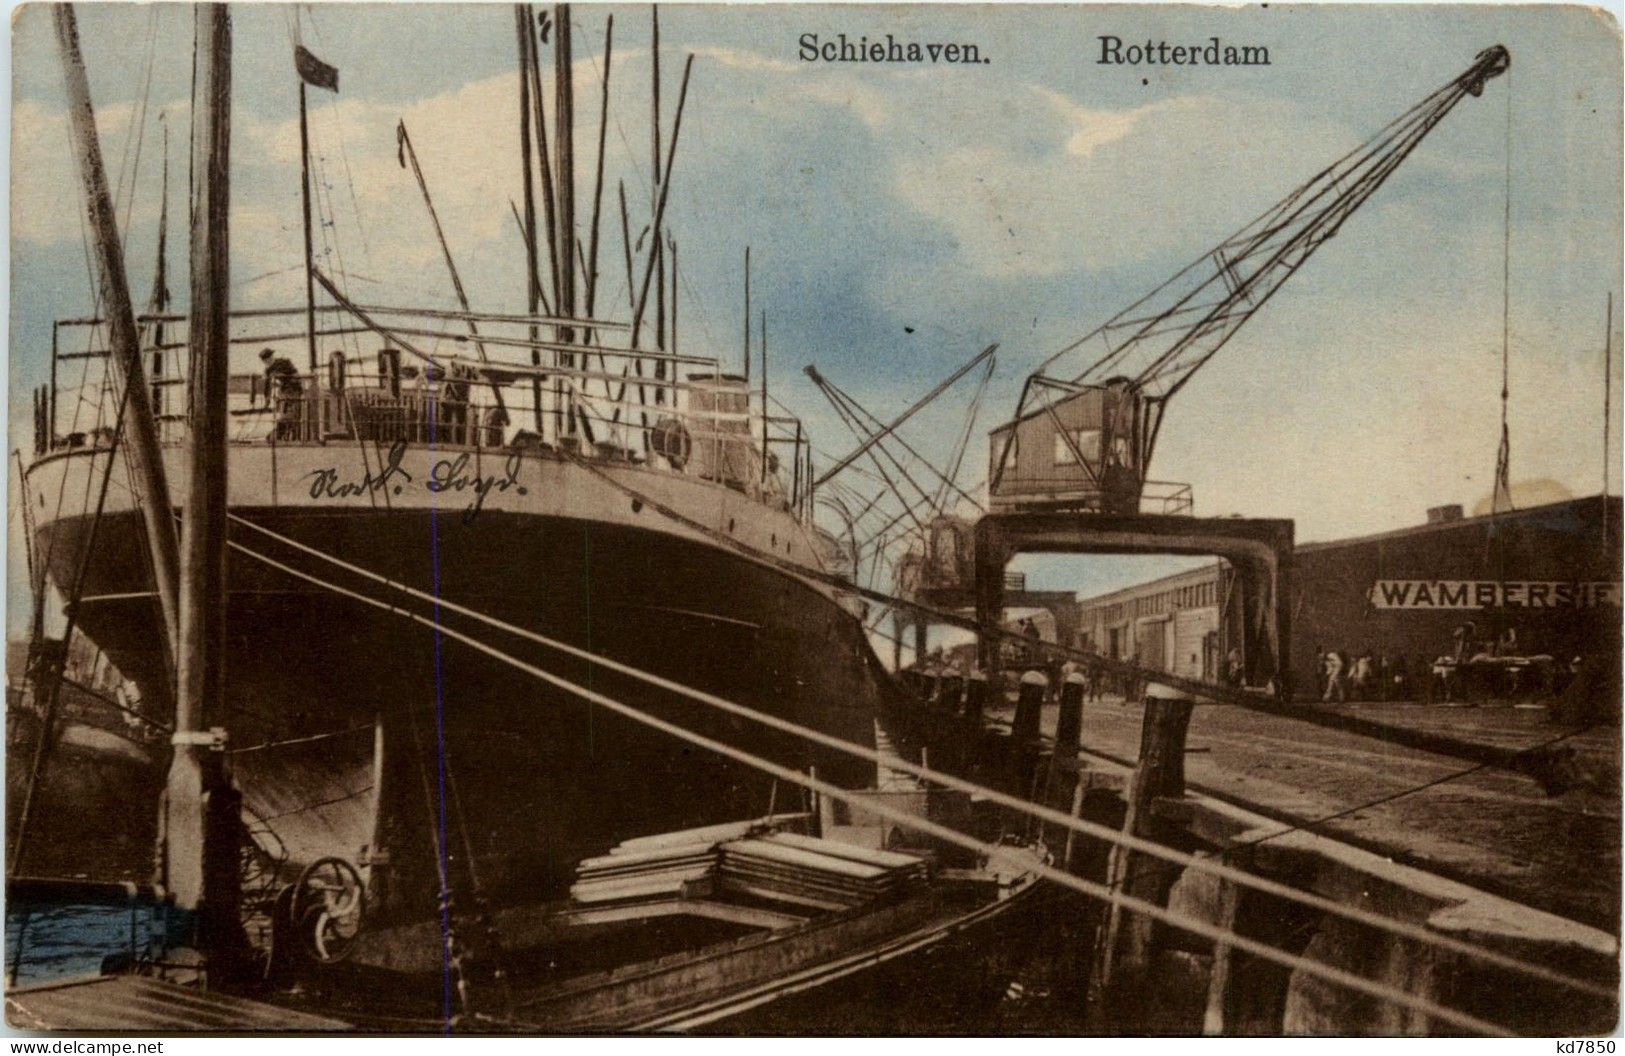 Rotterdam - Schiehaven - Rotterdam